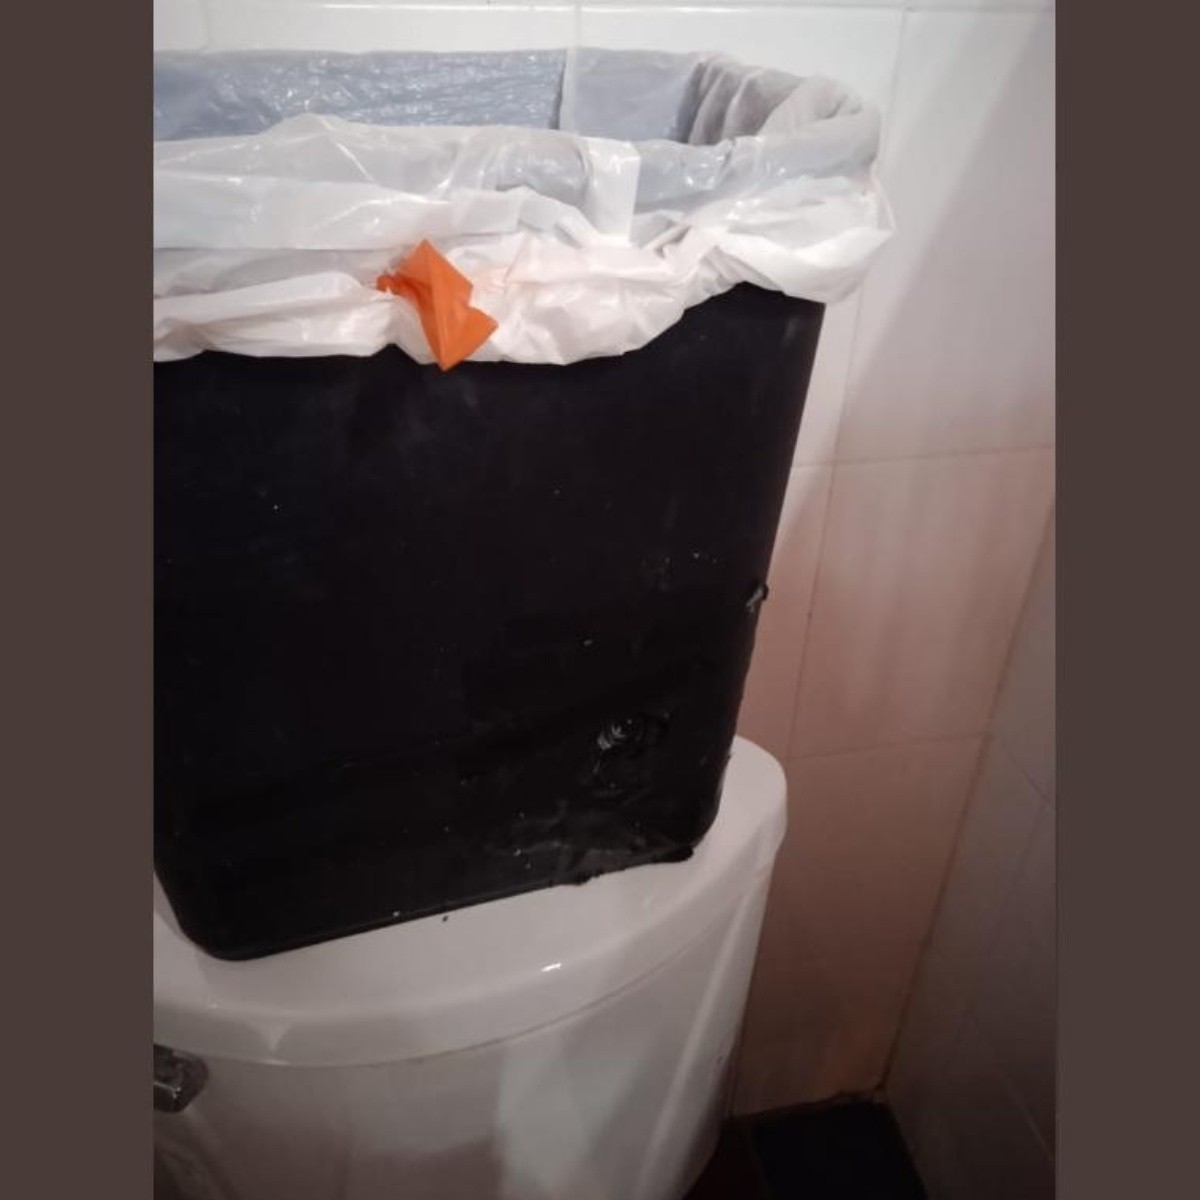 Idear Editor puerta Viral: Alumnas encuentran cámaras ocultas en baños de colegio en Monterrey ( VIDEO) | El Informador